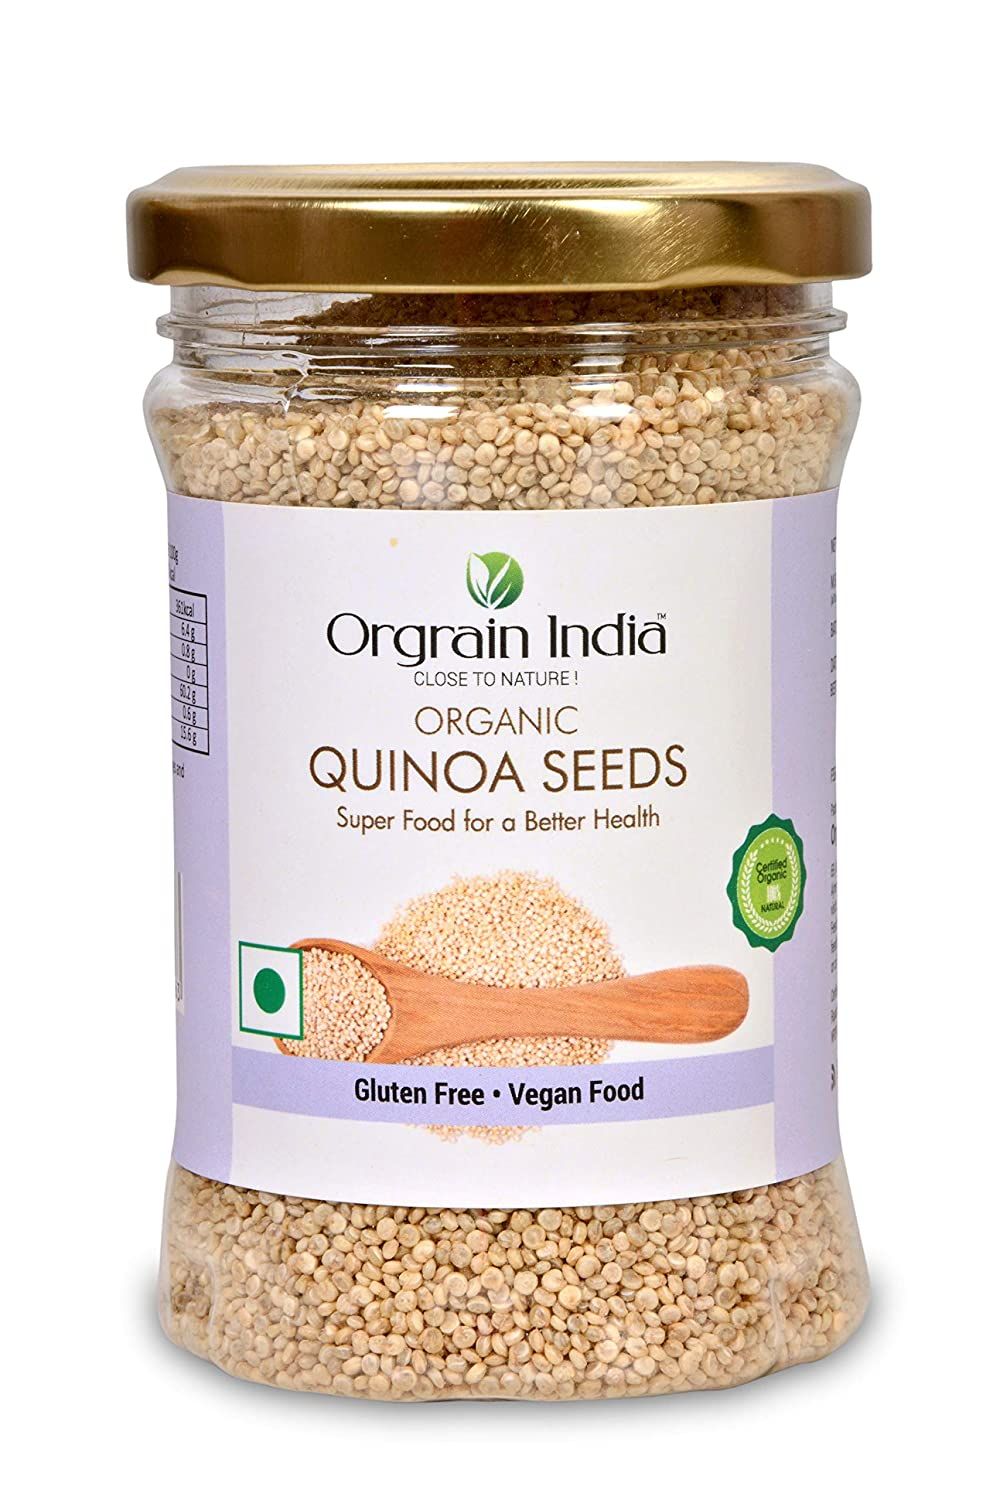 Organic India Quinoa Seeds Image